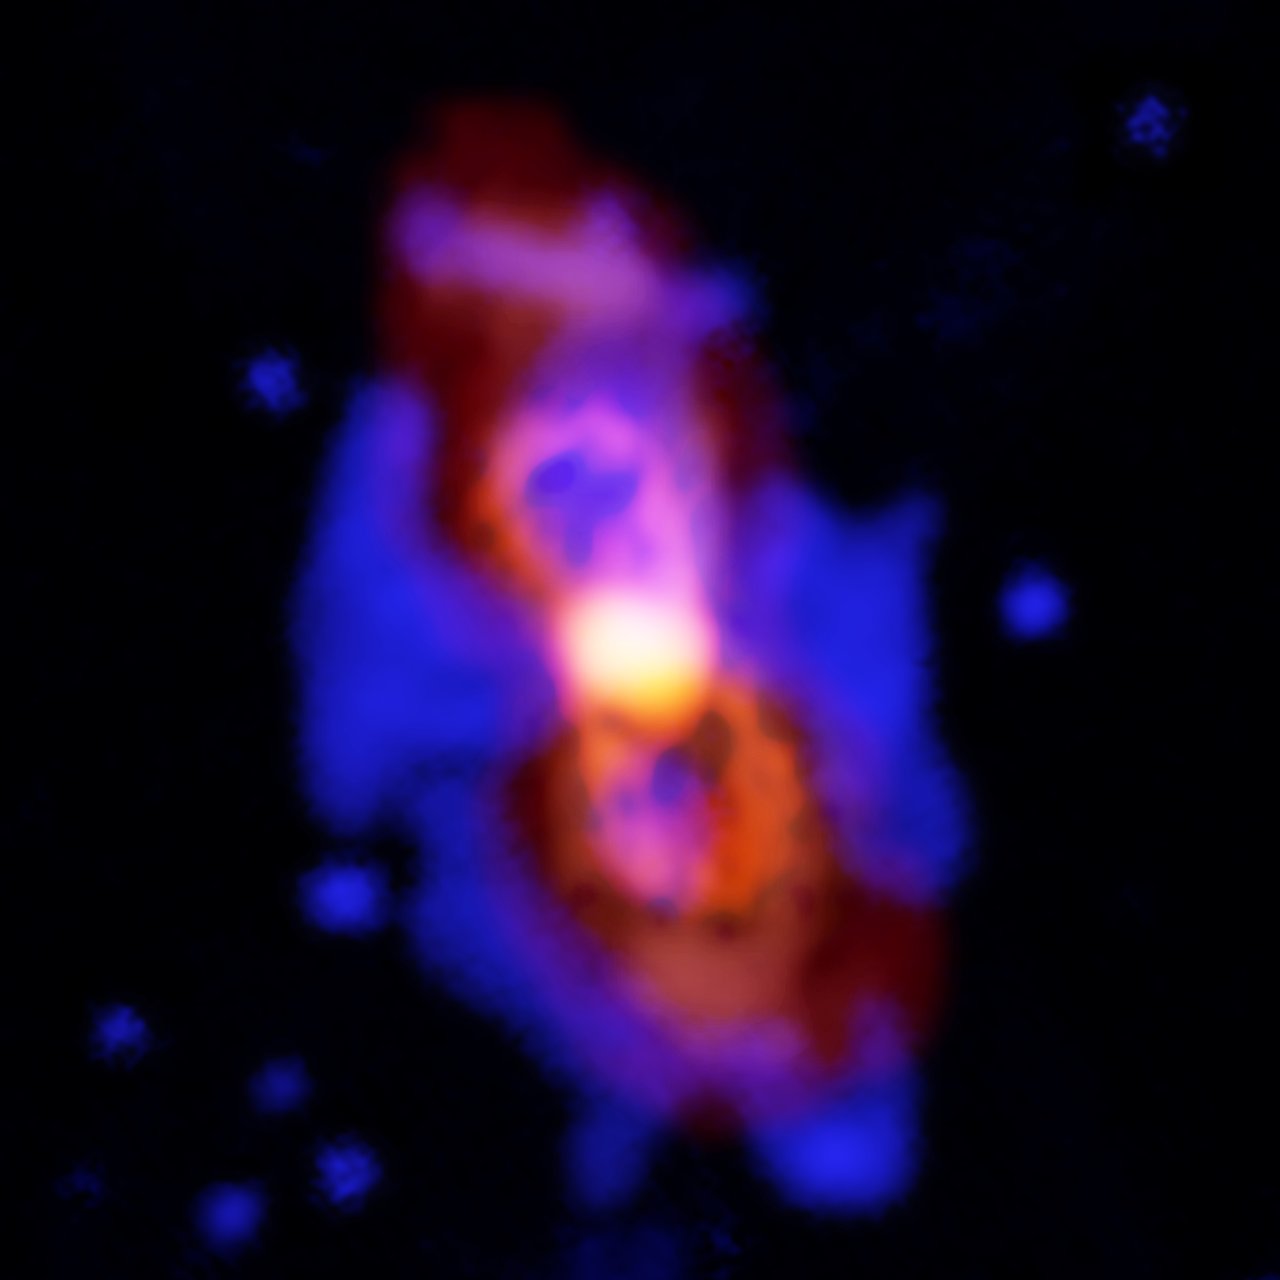 Composición de imágenes de CK Vulpeculae, los restos de una colisión de dos estrellas. Este impacto lanzó moléculas radioactivas al espacio, como se ve en la estructura de doble lóbulo del centro, en colores anaranjados. Crédito: ALMA (ESO/NAOJ/NRAO), T. Kamiński; Gemini, NOAO/AURA/NSF; NRAO/AUI/NSF, B. Saxton